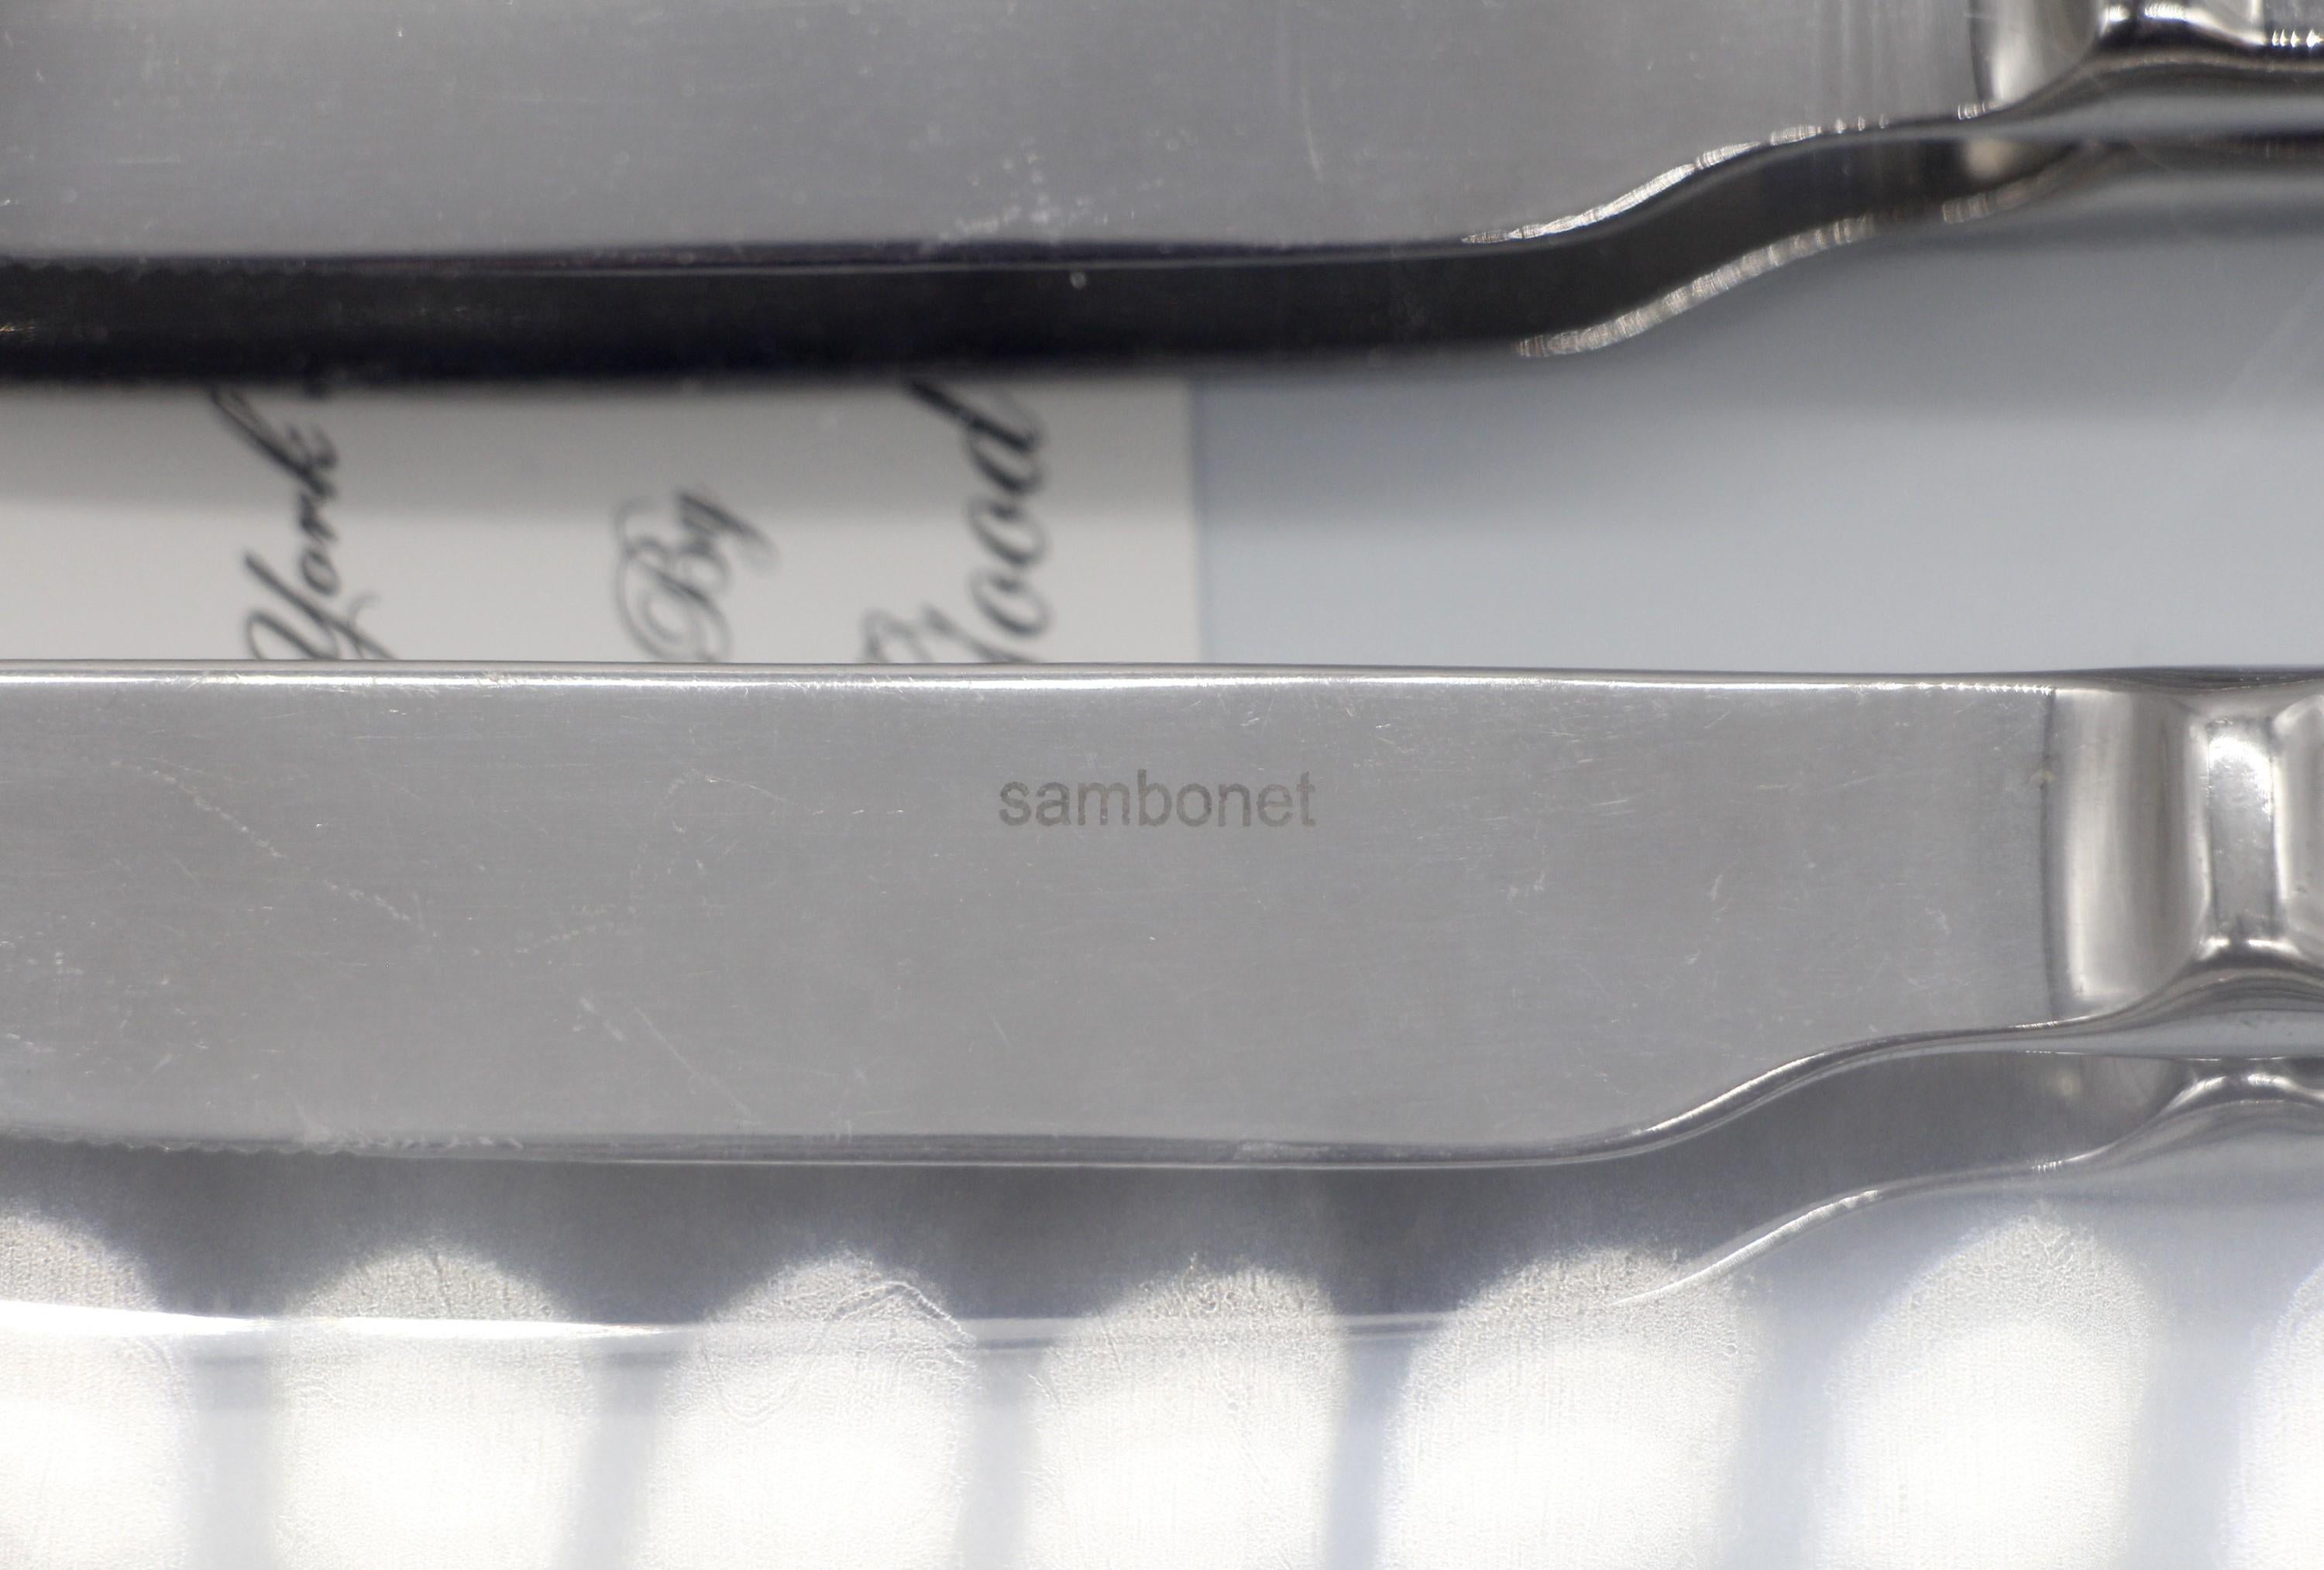 Italian Waldorf Astoria Sambonet Steak Knife Flatware Set